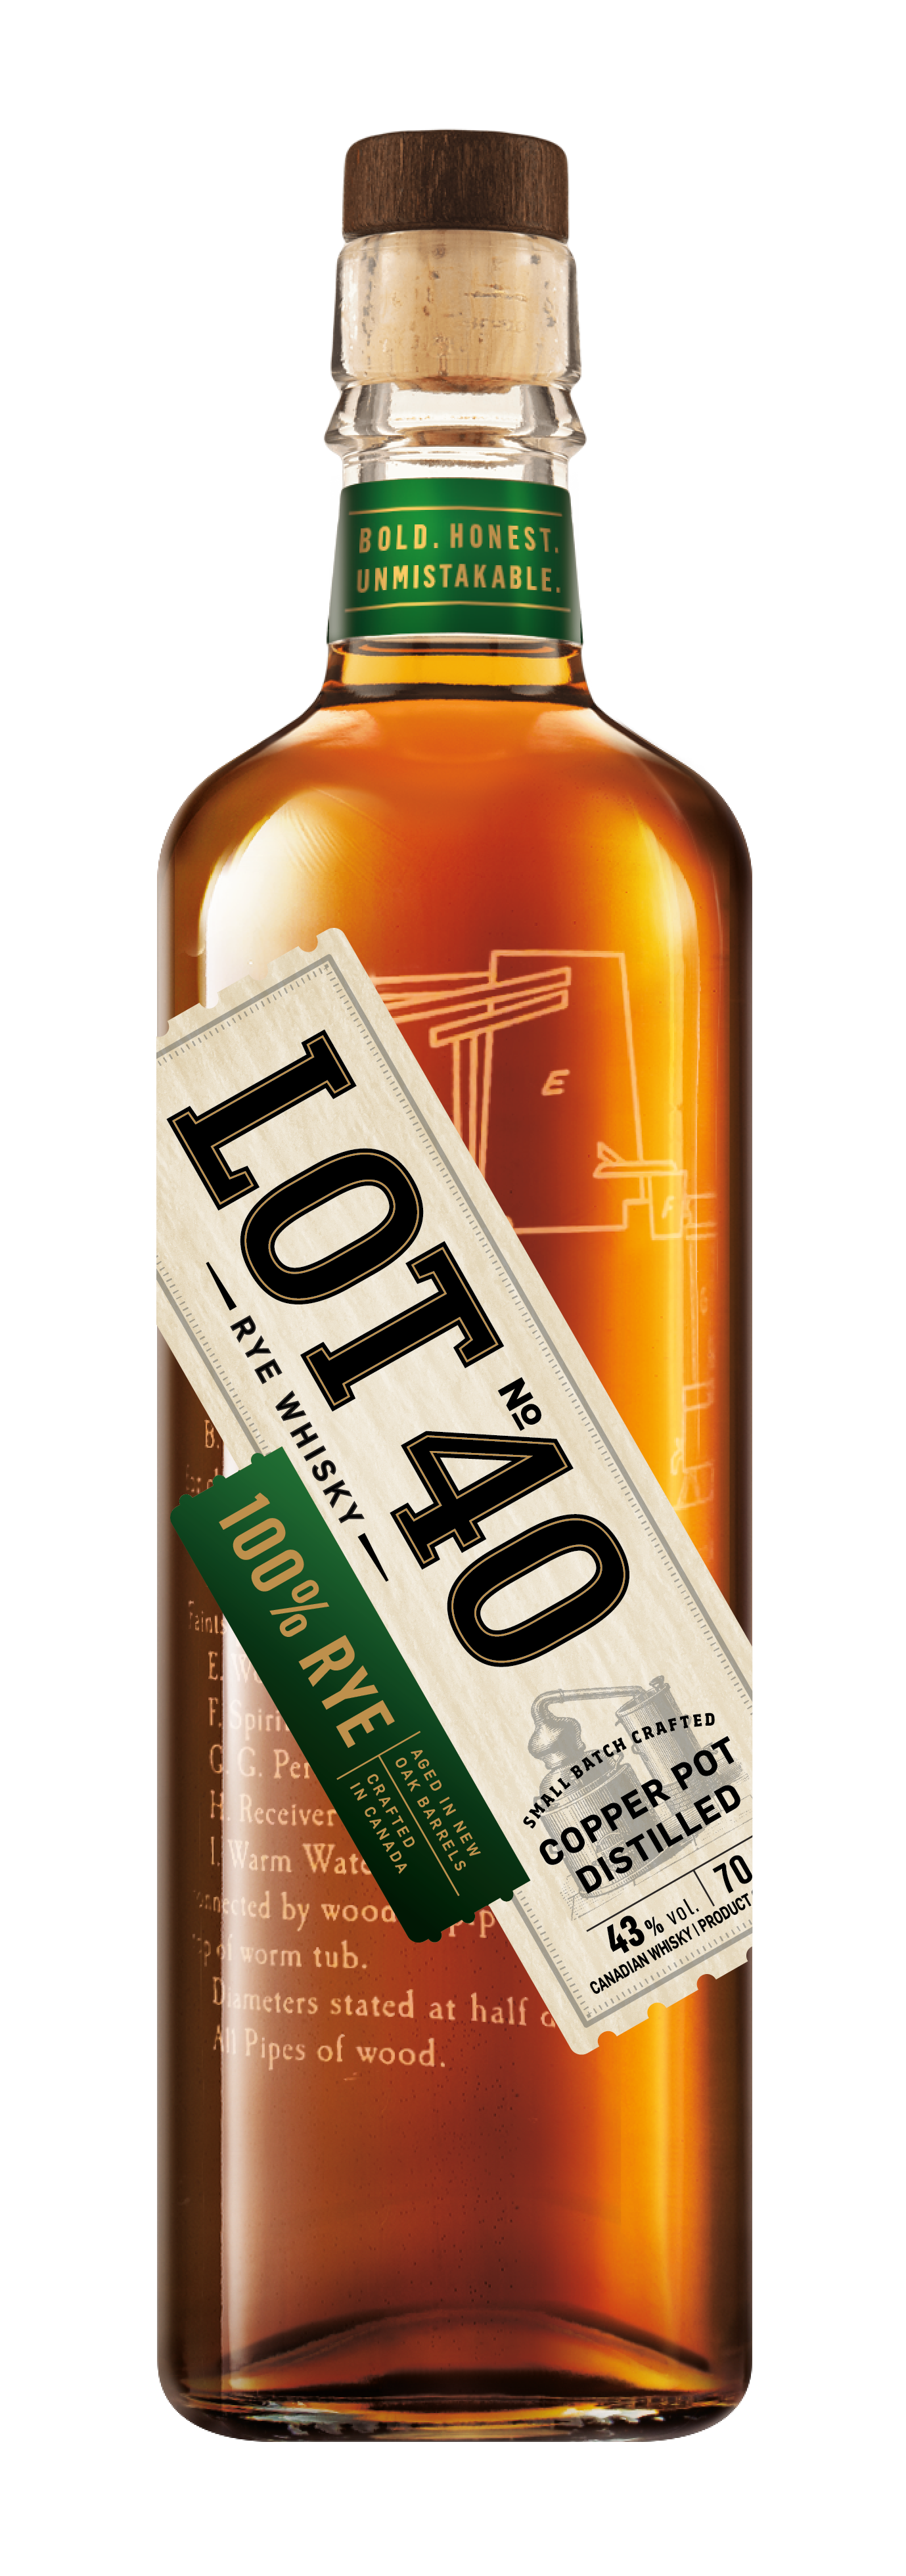 Lot No. 40 100% Pot Still Rye Whisky